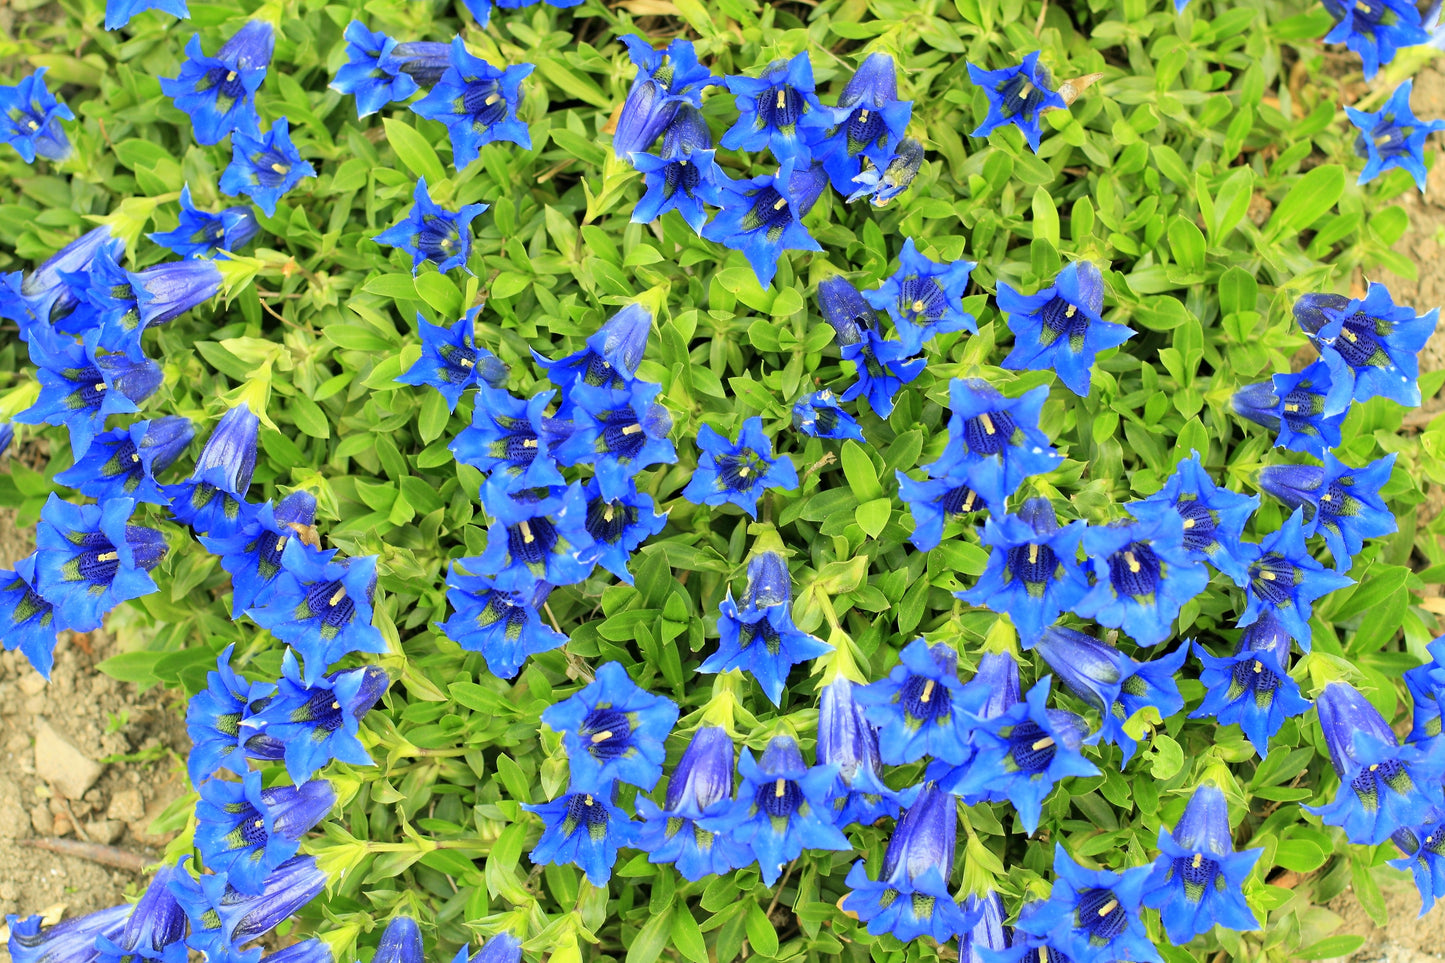 15 Blue STEMLESS GENTIAN Gentiana Acaulis Kochiana Flower Seeds